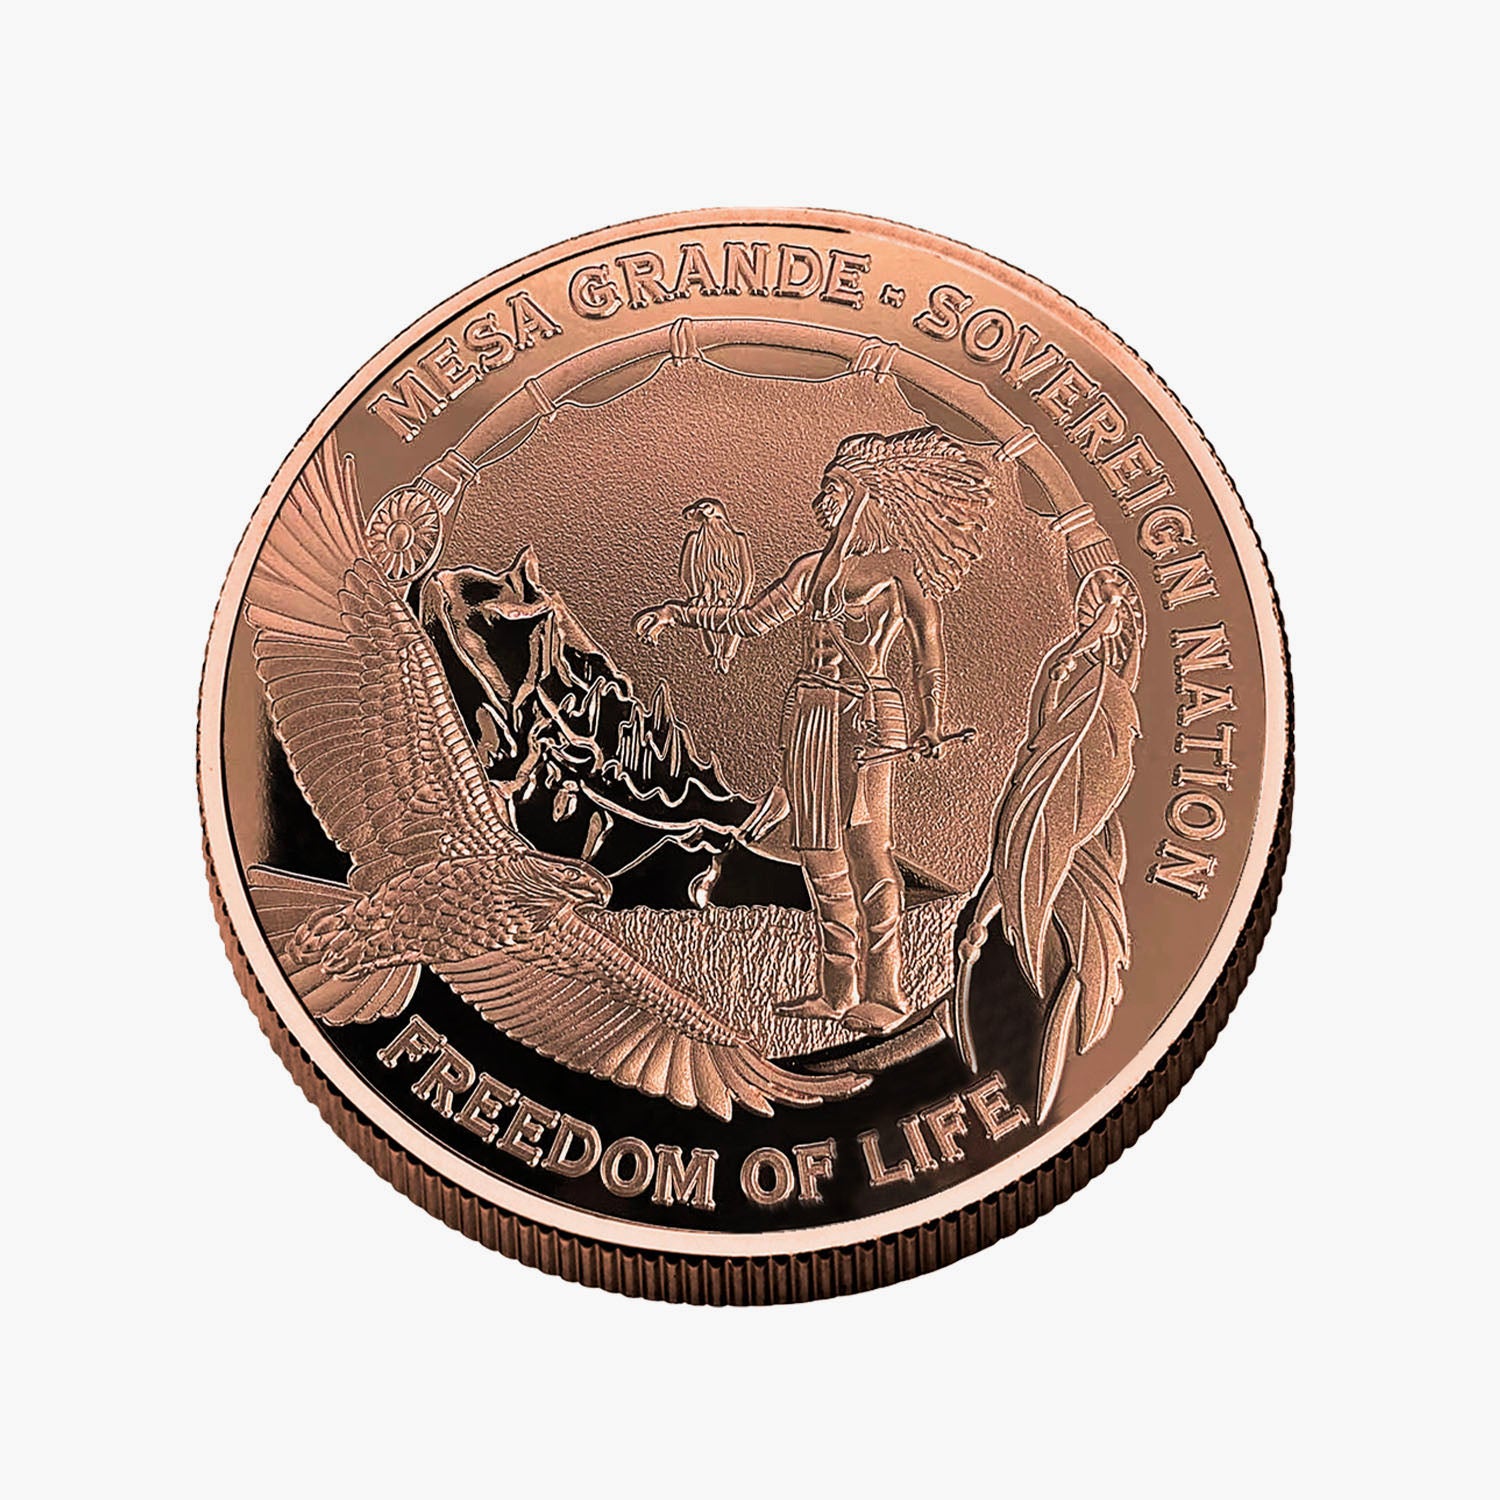 The 2022 Mesa Grande Bison Hunter 5oz Solid Copper Coin